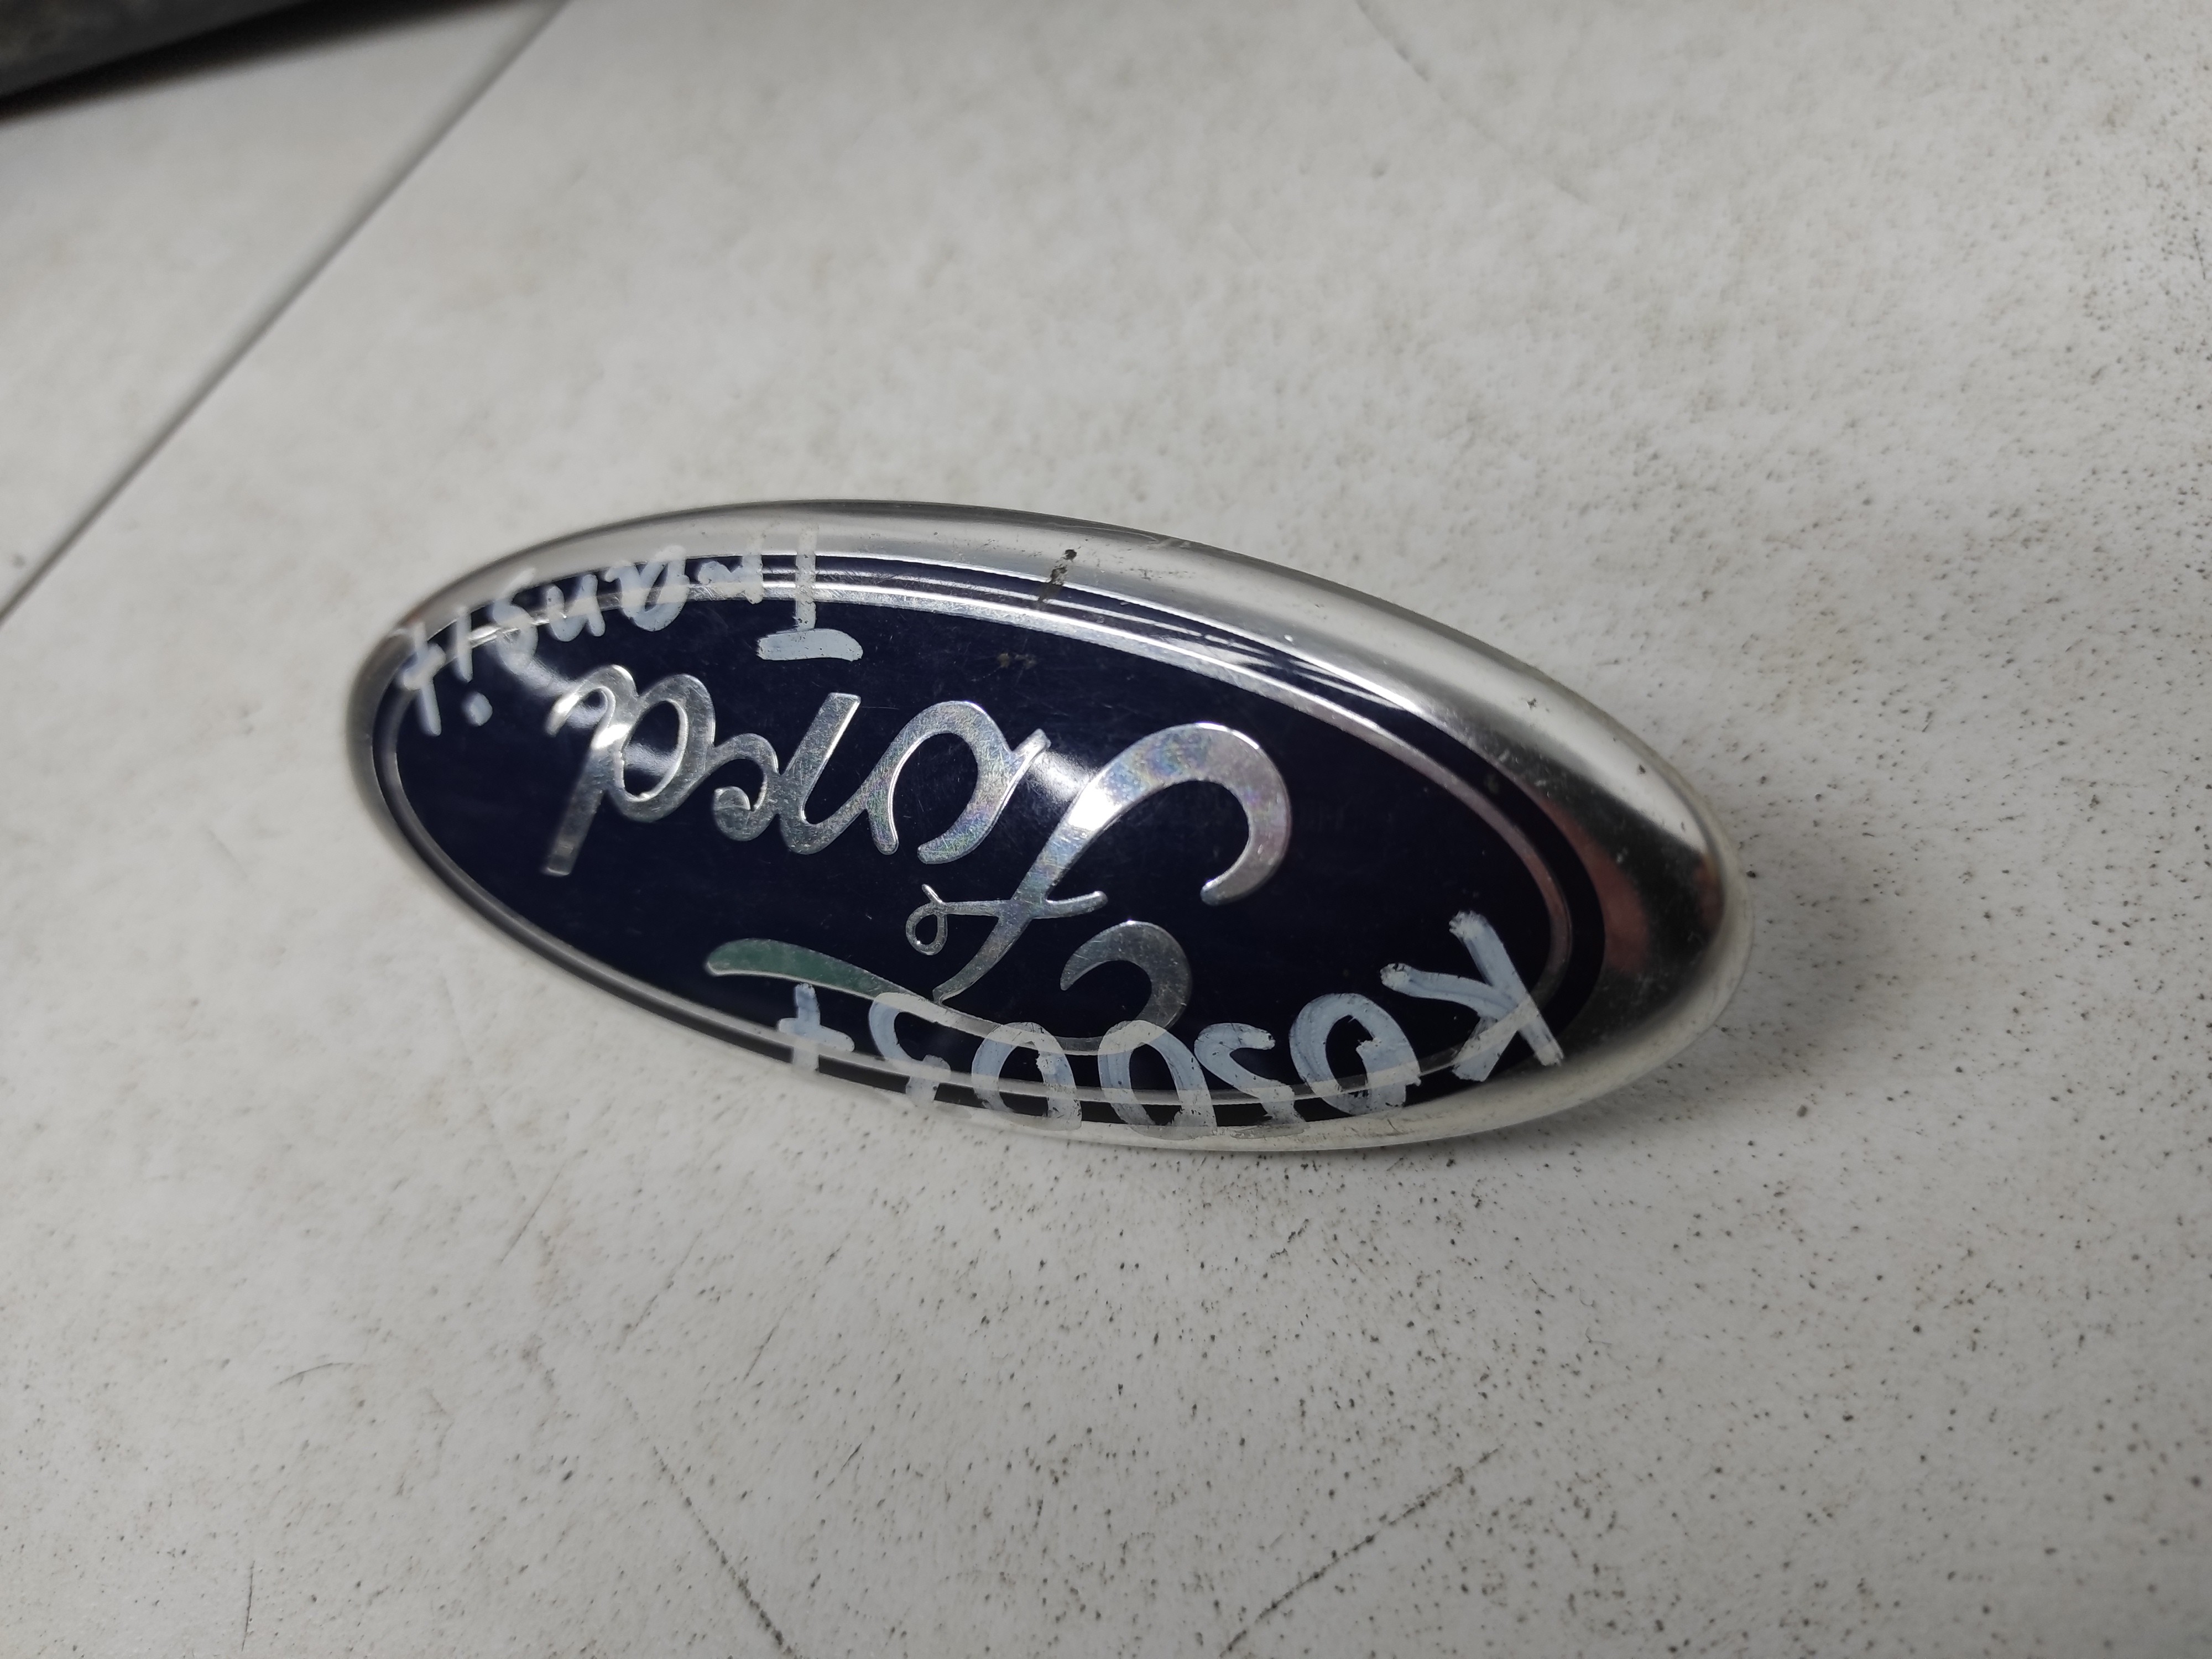 Логотип на крышке. 1332800 Эмблема Ford. Логотип крышки Ренни. Эмблема Mondeo Ford 1829192. Эмблема "Transit" Ford 2048156.